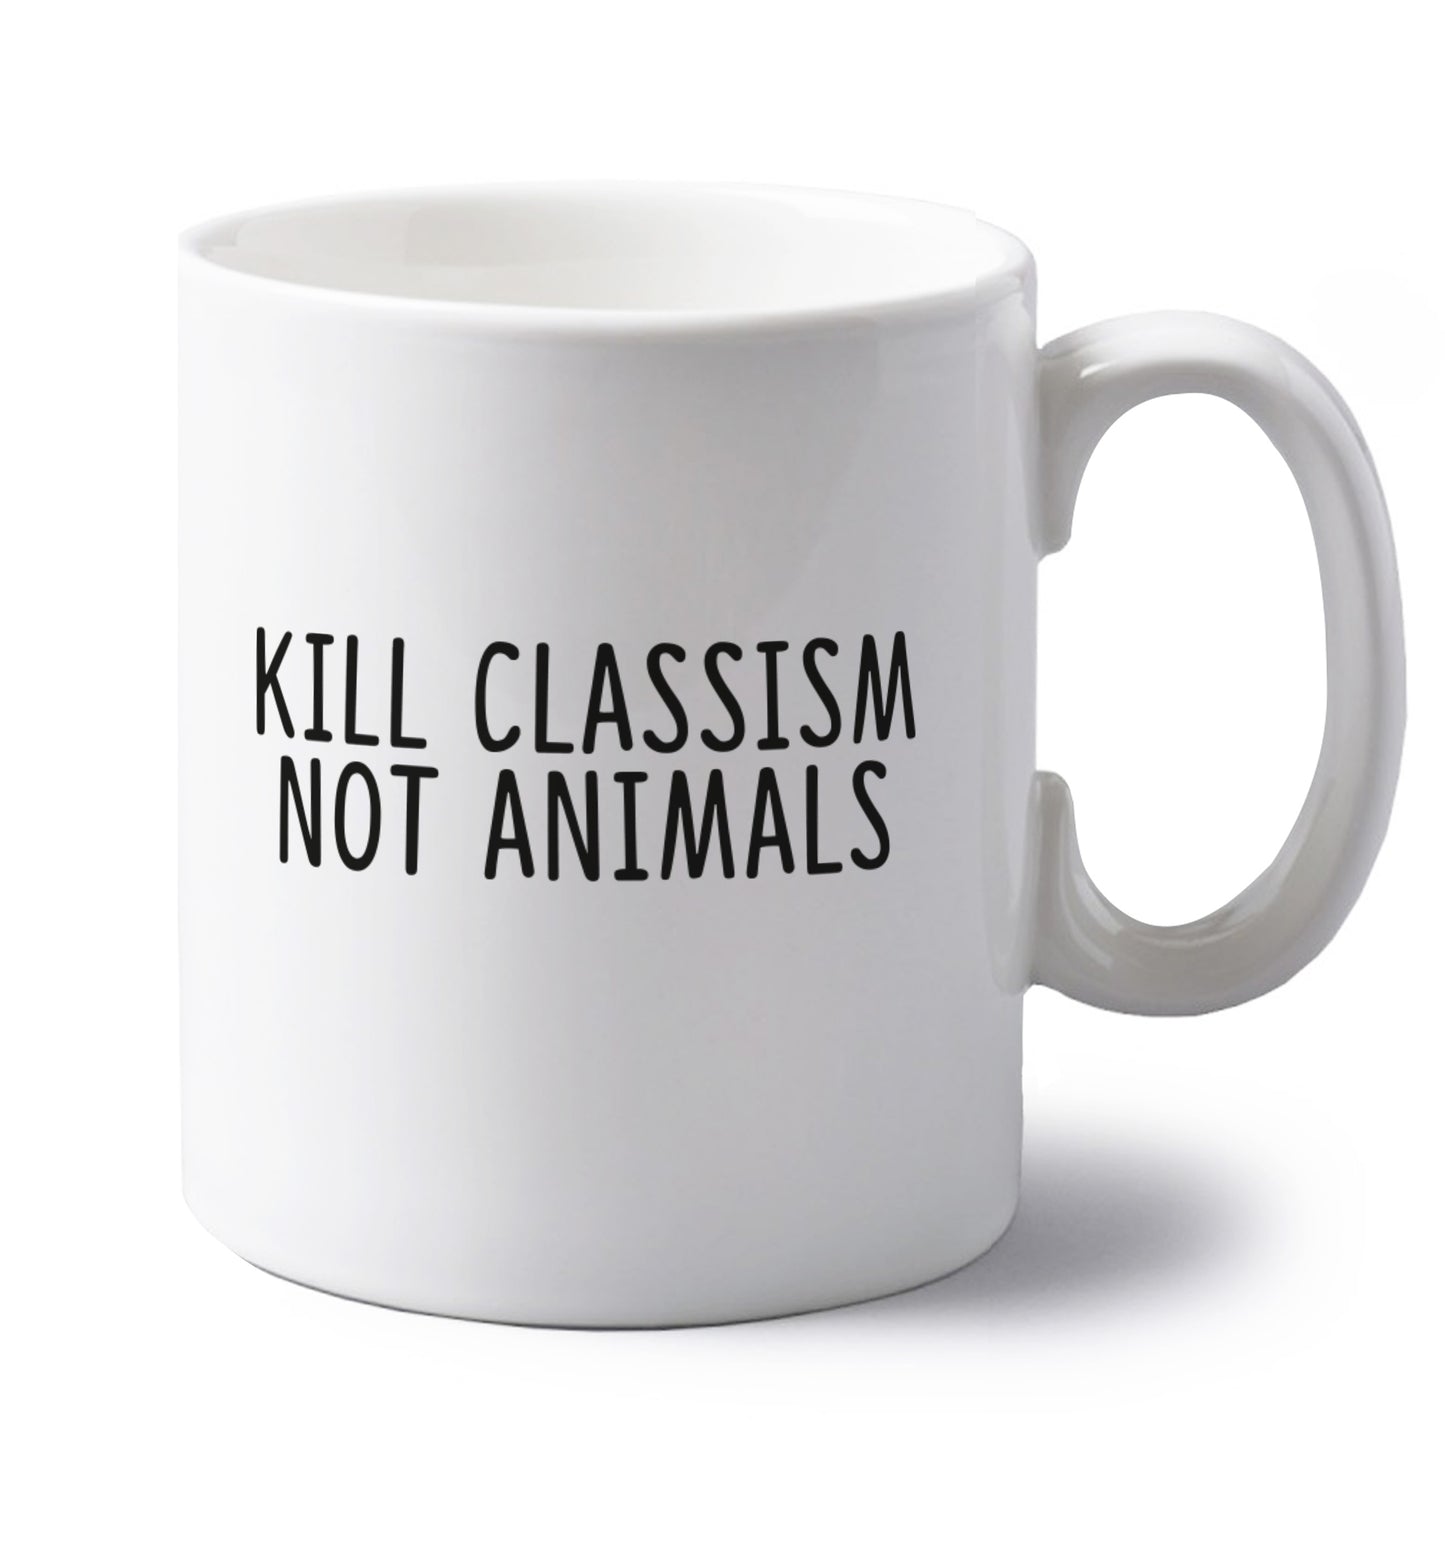 Kill Classism Not Animals left handed white ceramic mug 